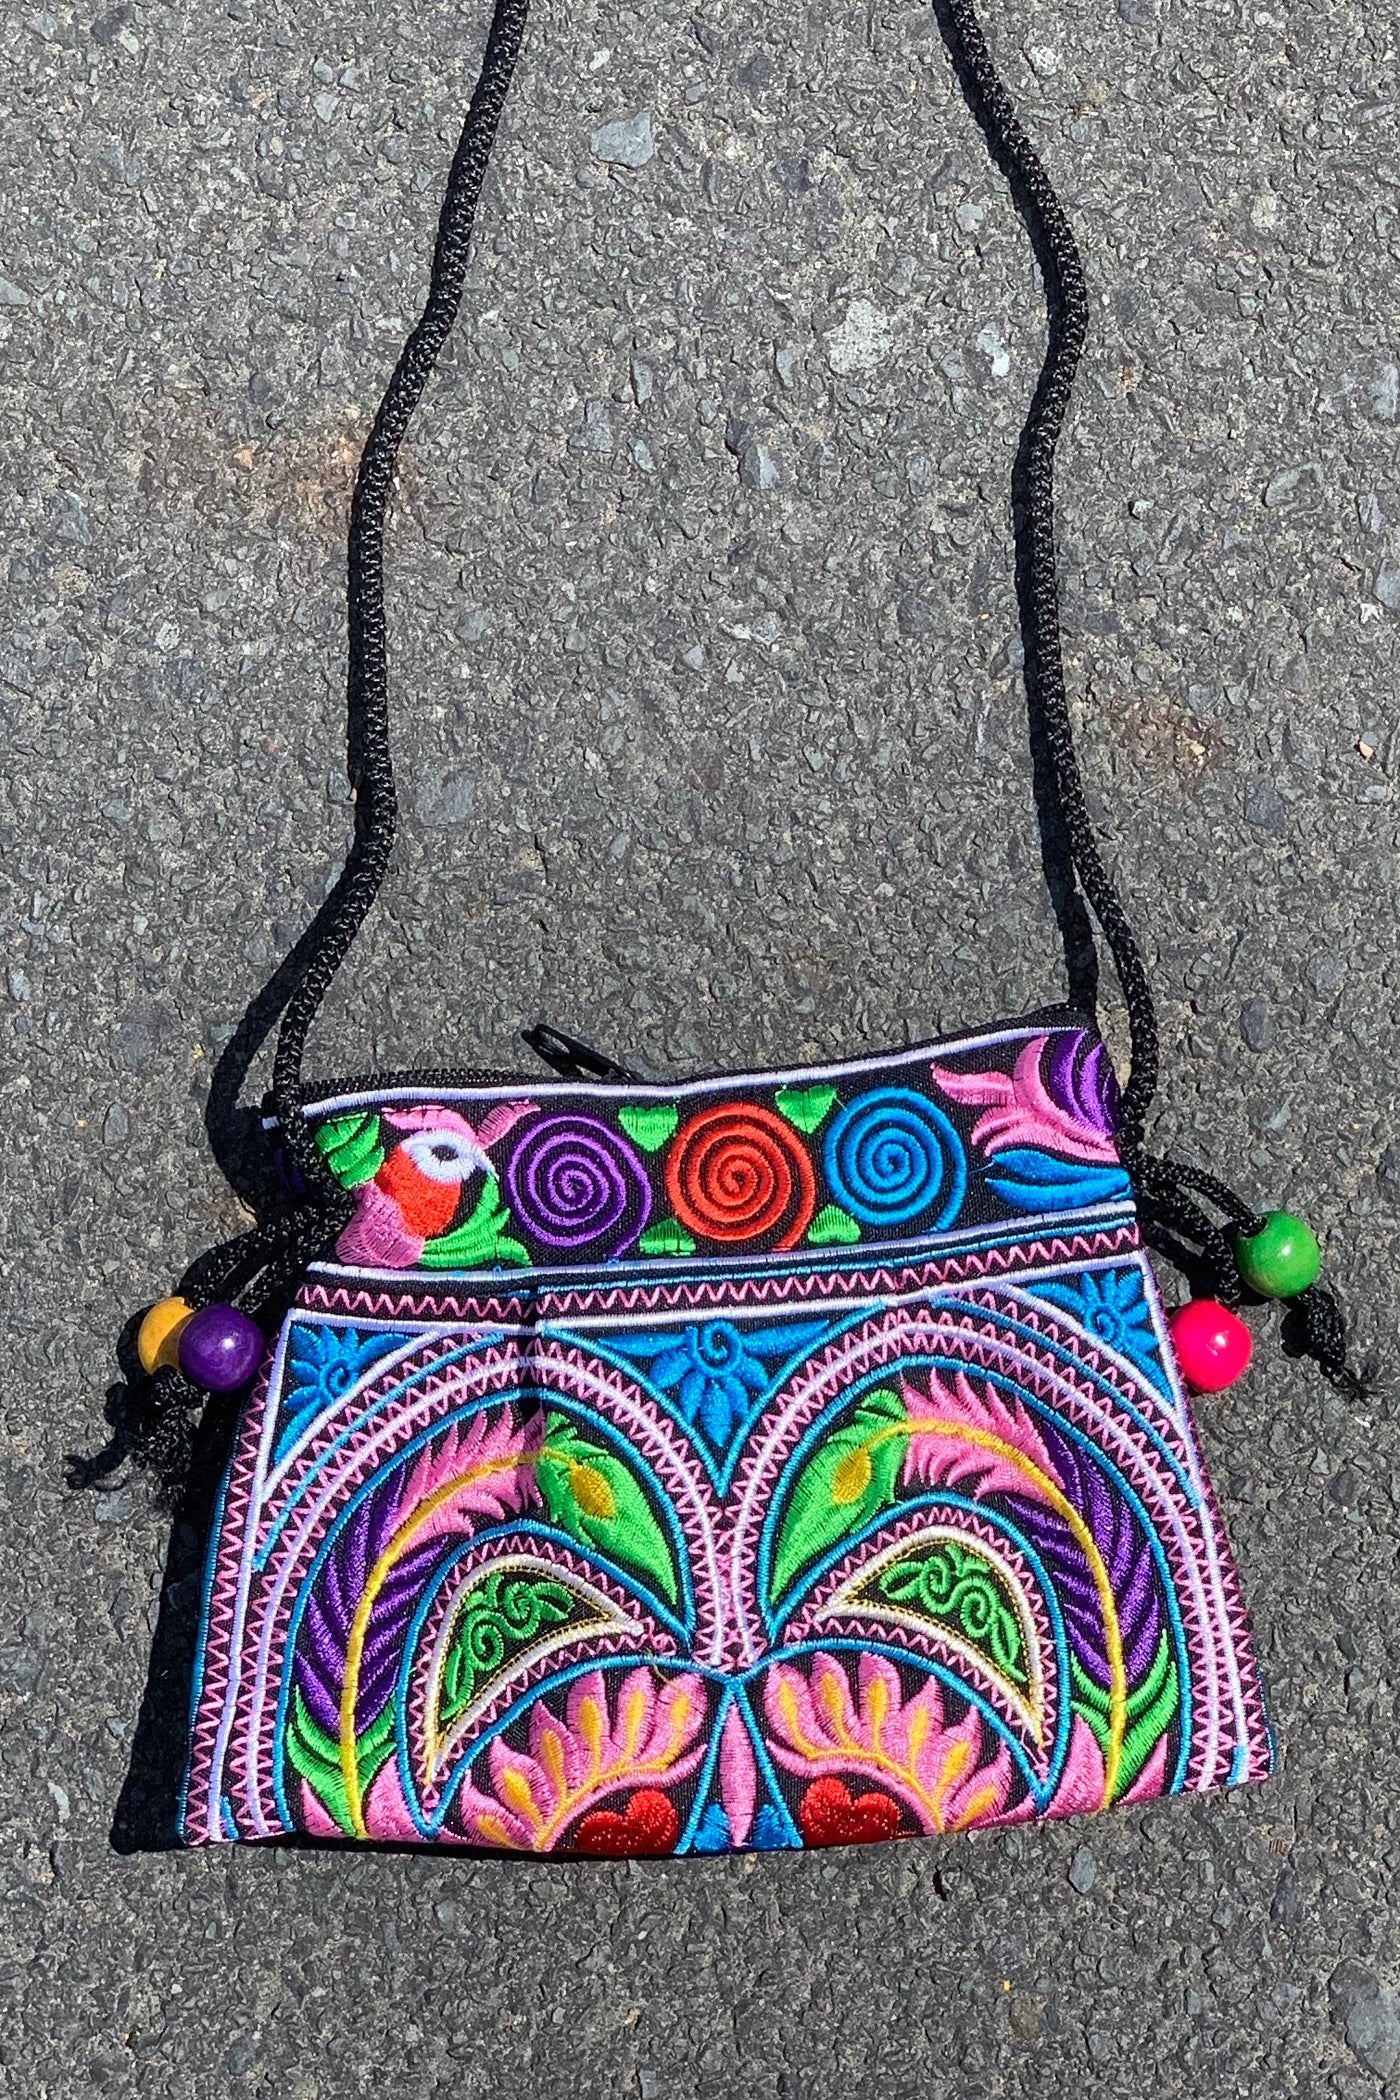 Beaded embroidered stash bag